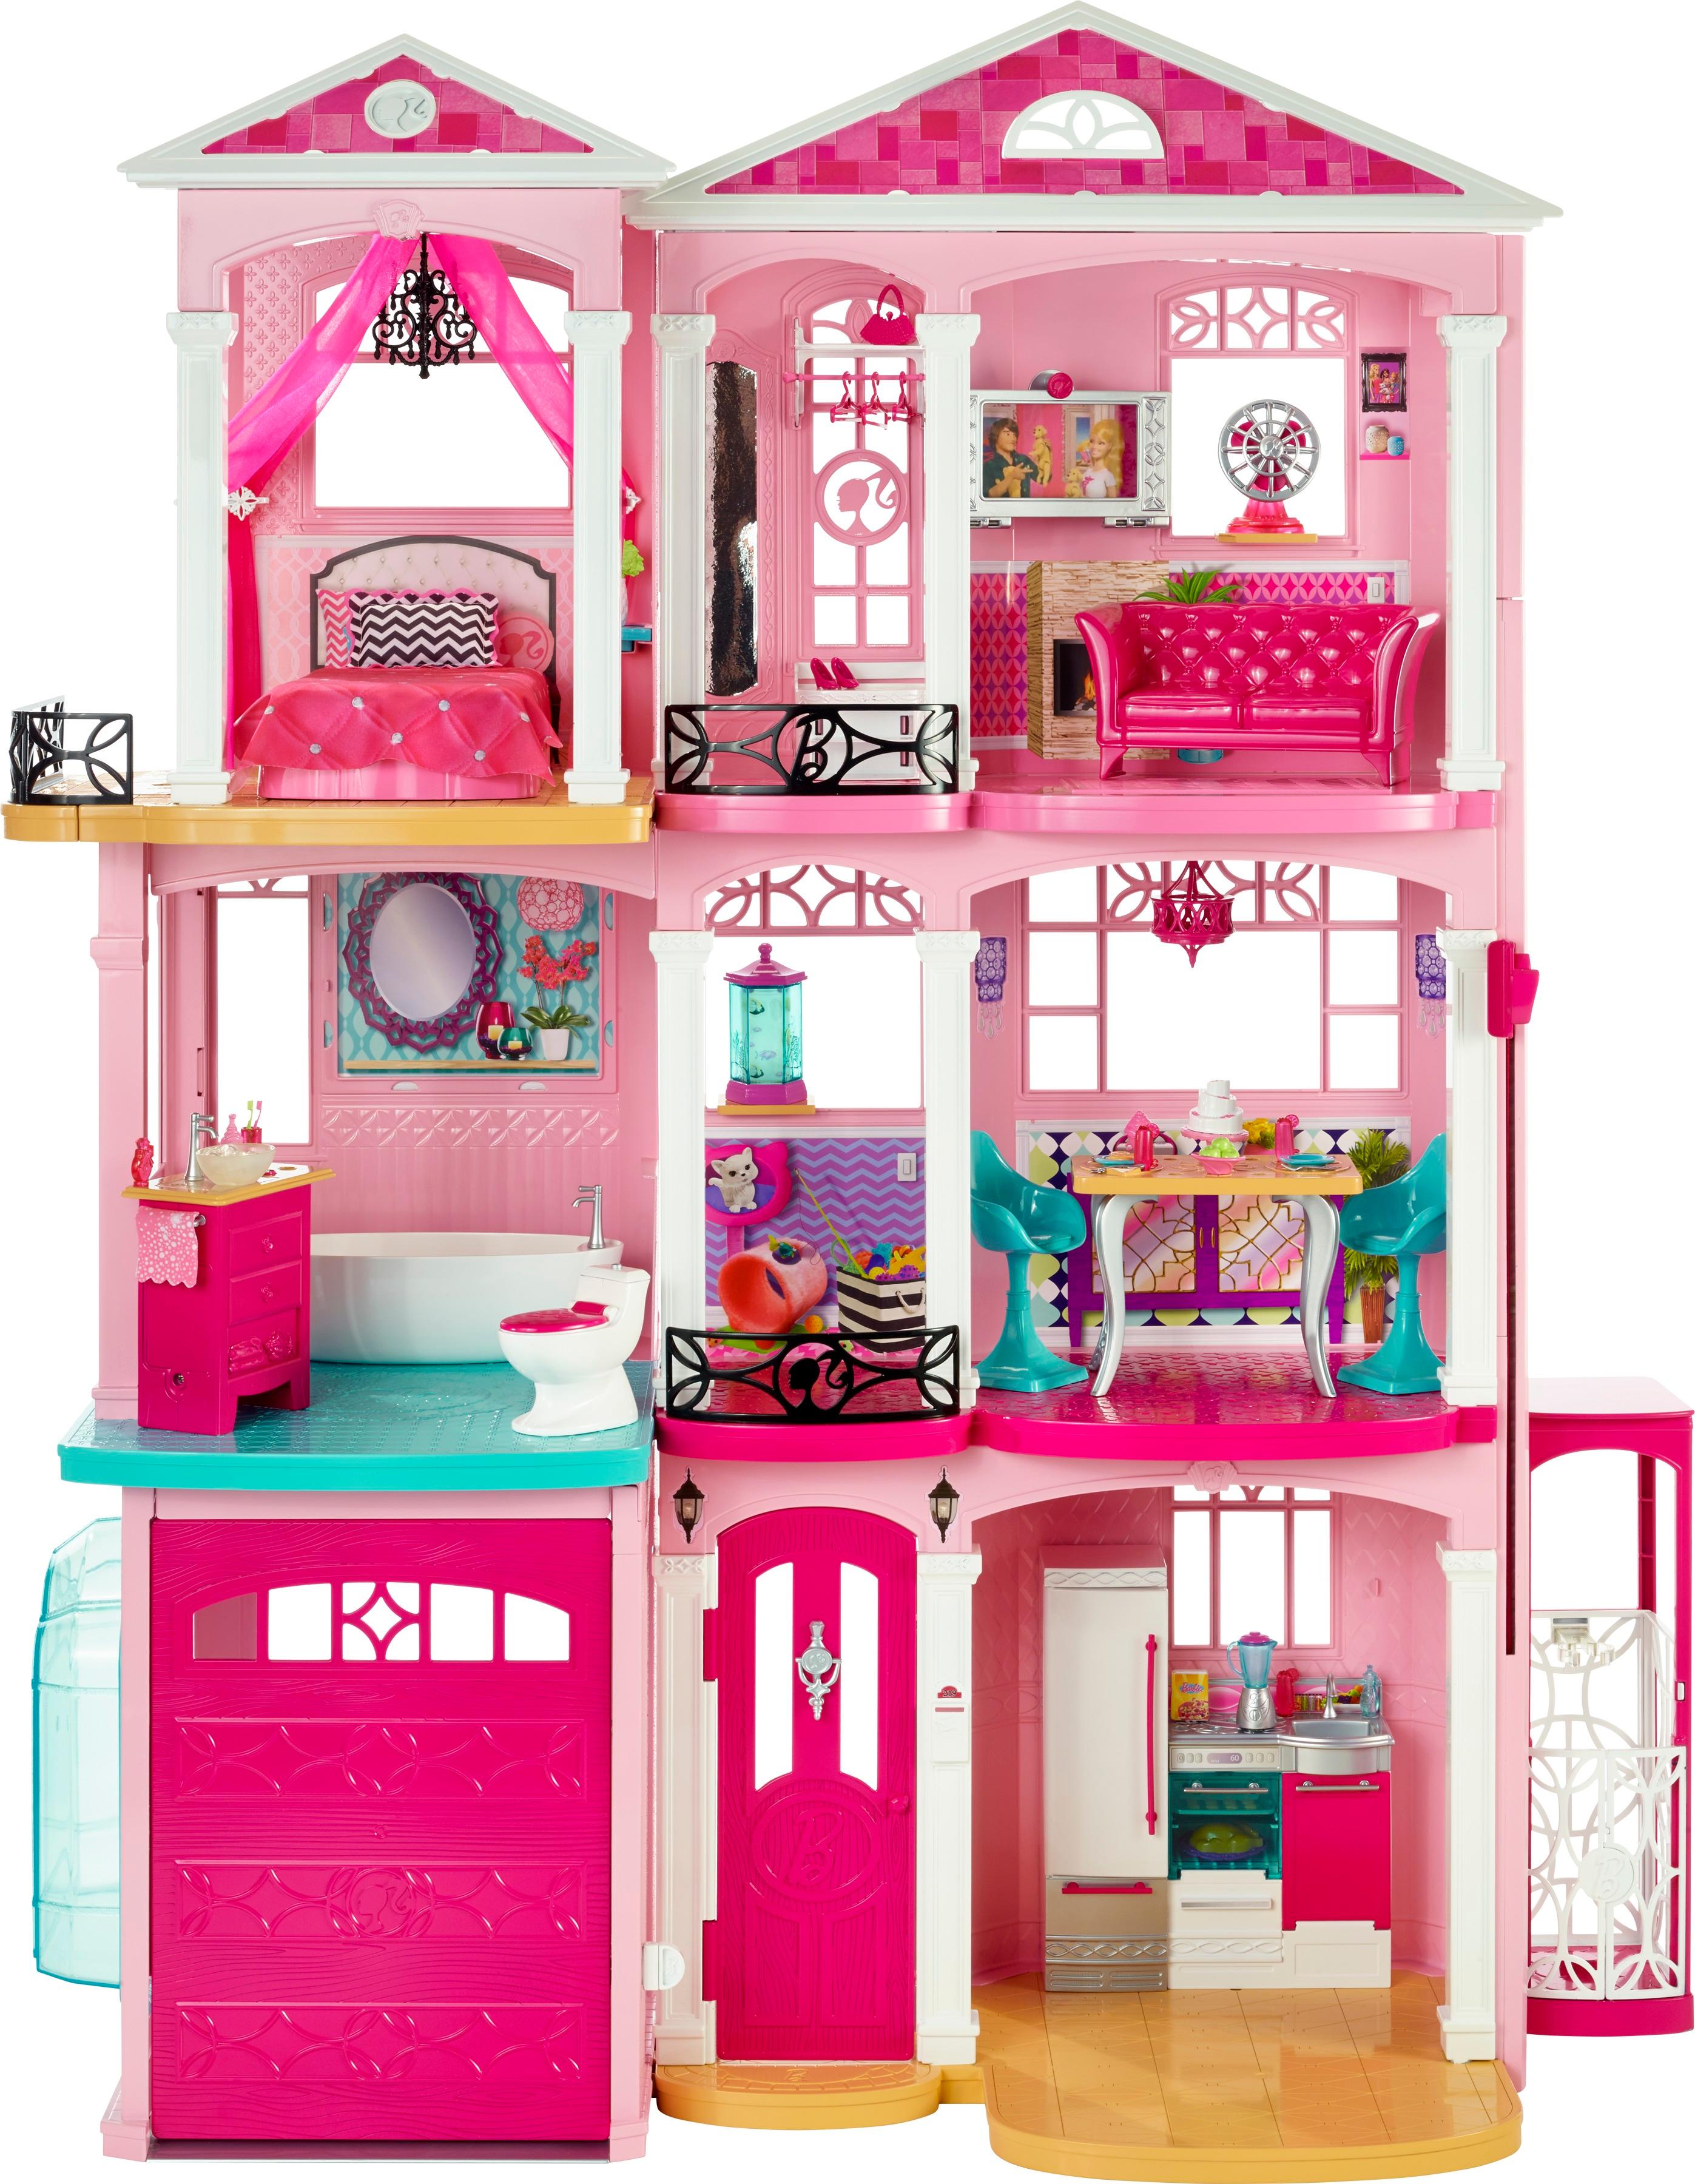 Customer Reviews: Barbie Dreamhouse Best Buy